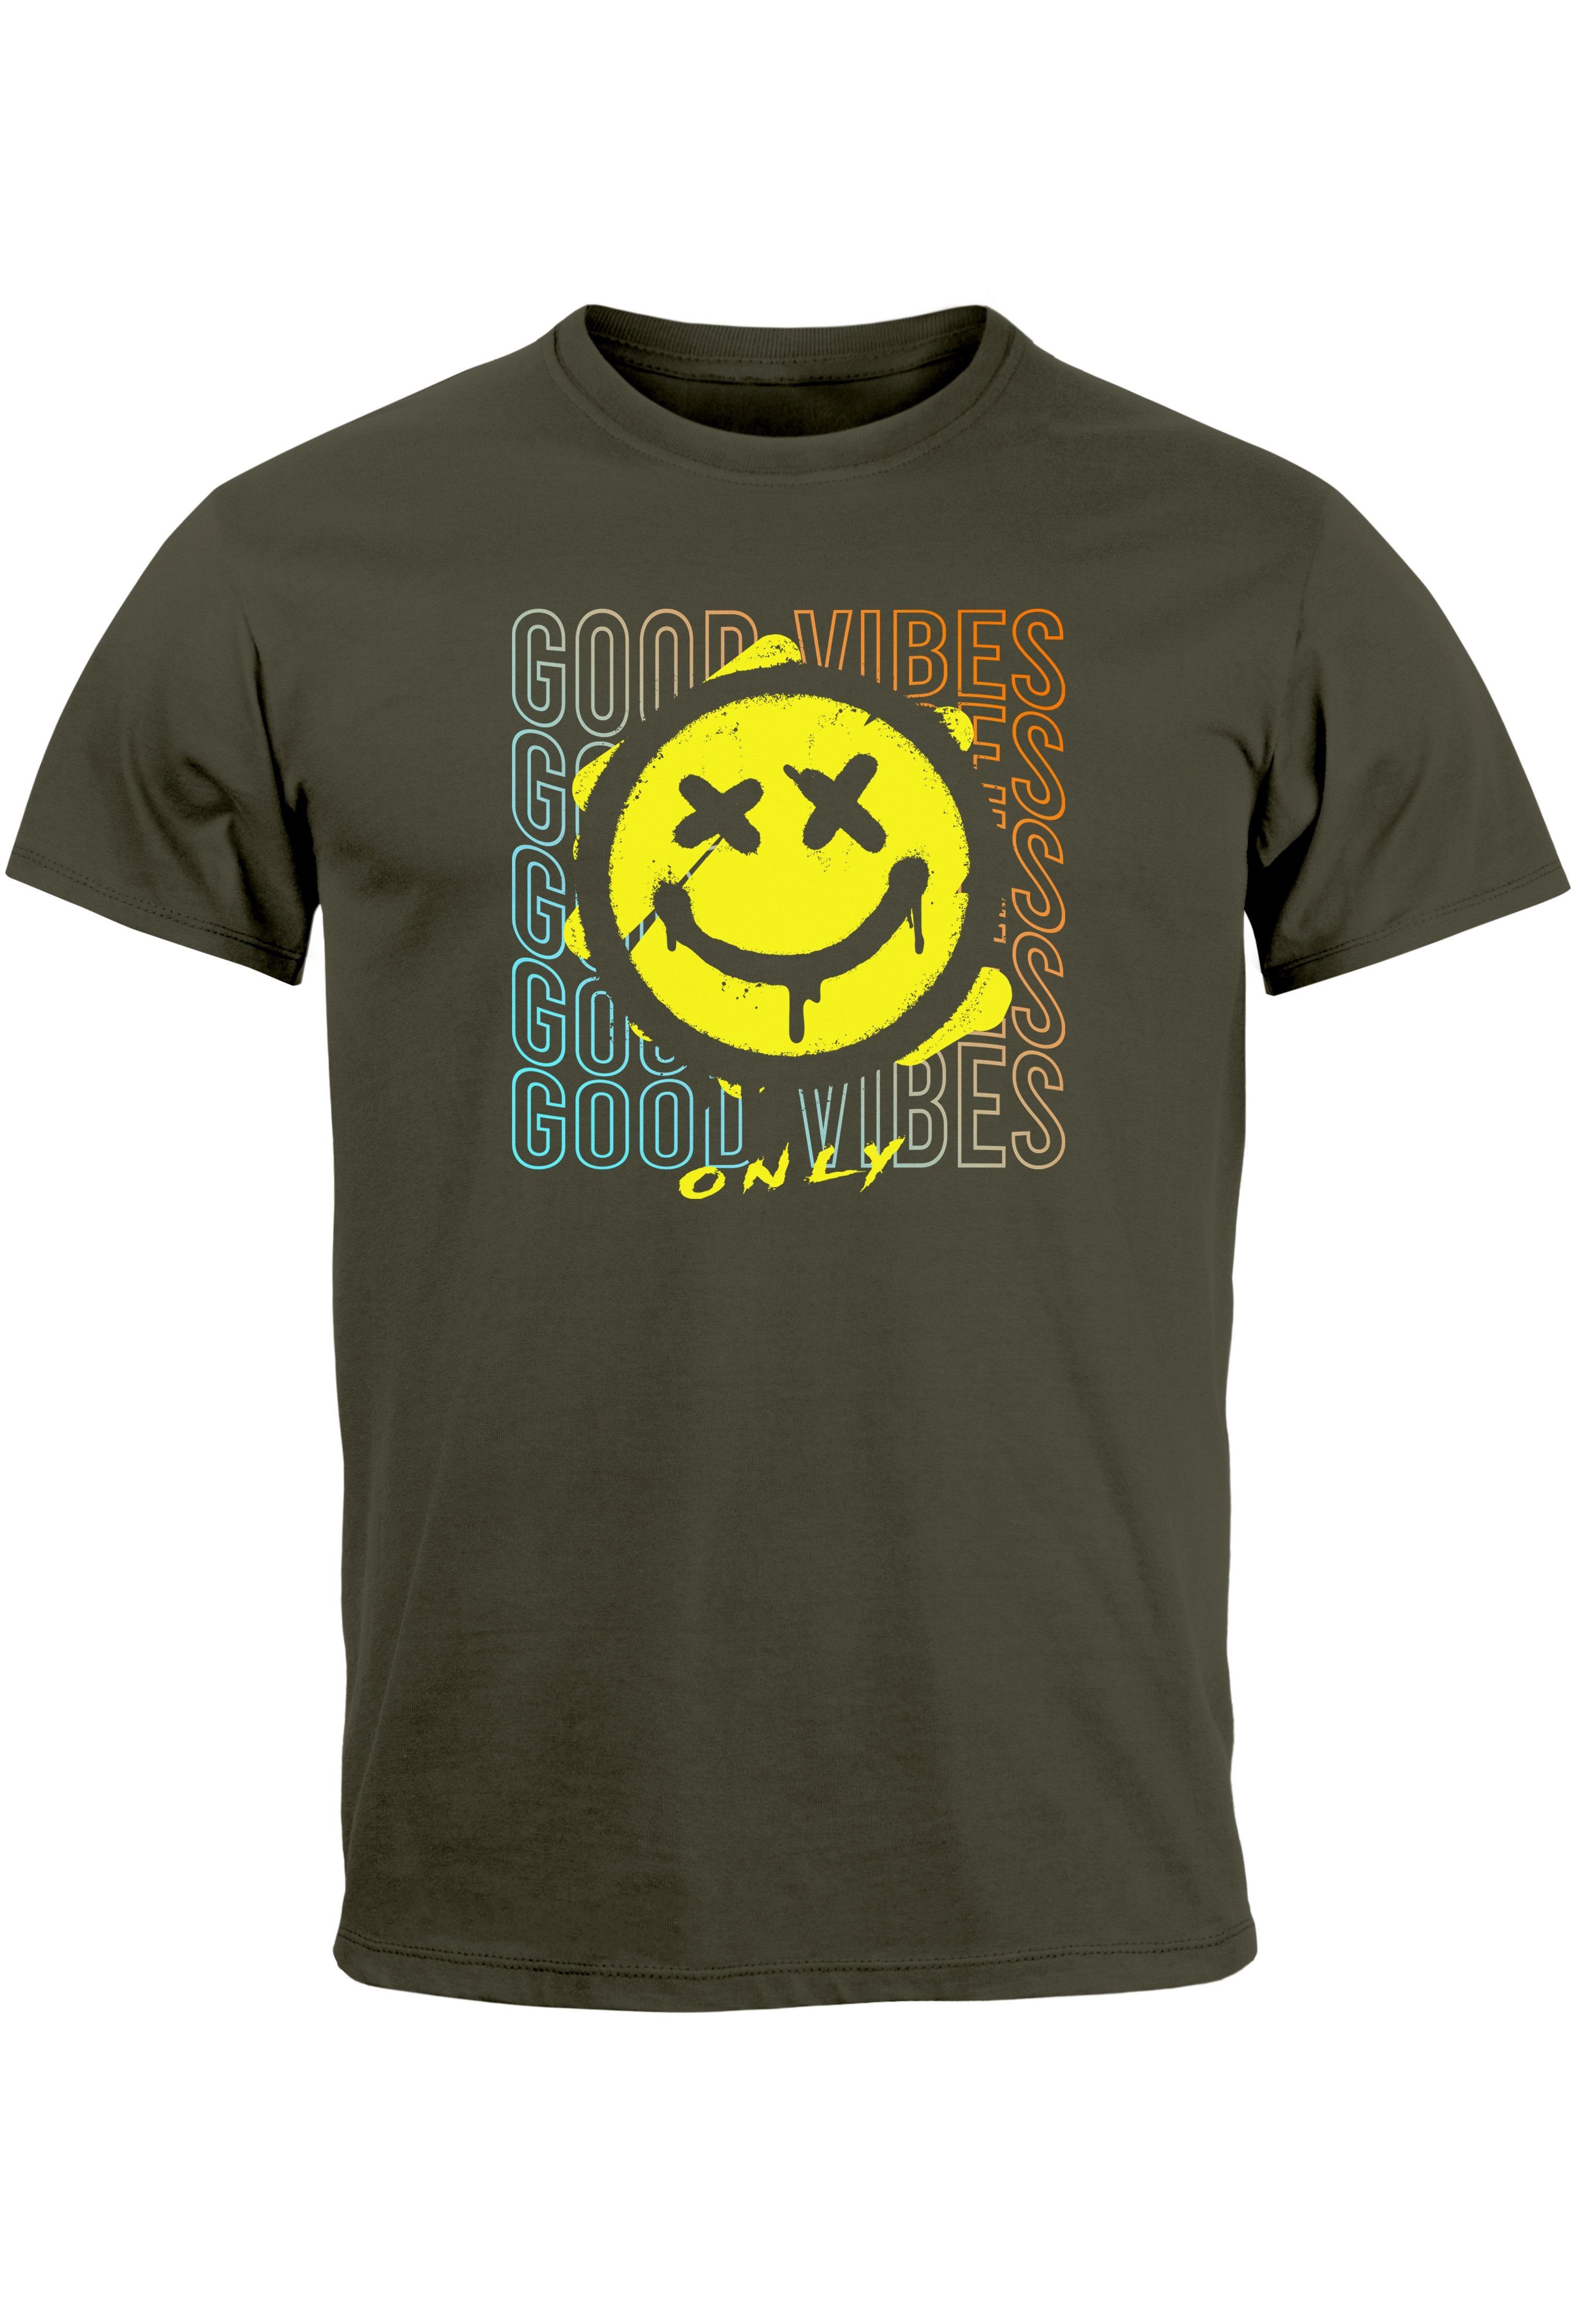 Neverless Print-Shirt Herren T-Shirt Smiling Face Good Vibes Print Aufdruck Bedruckt Teachwe mit Print army